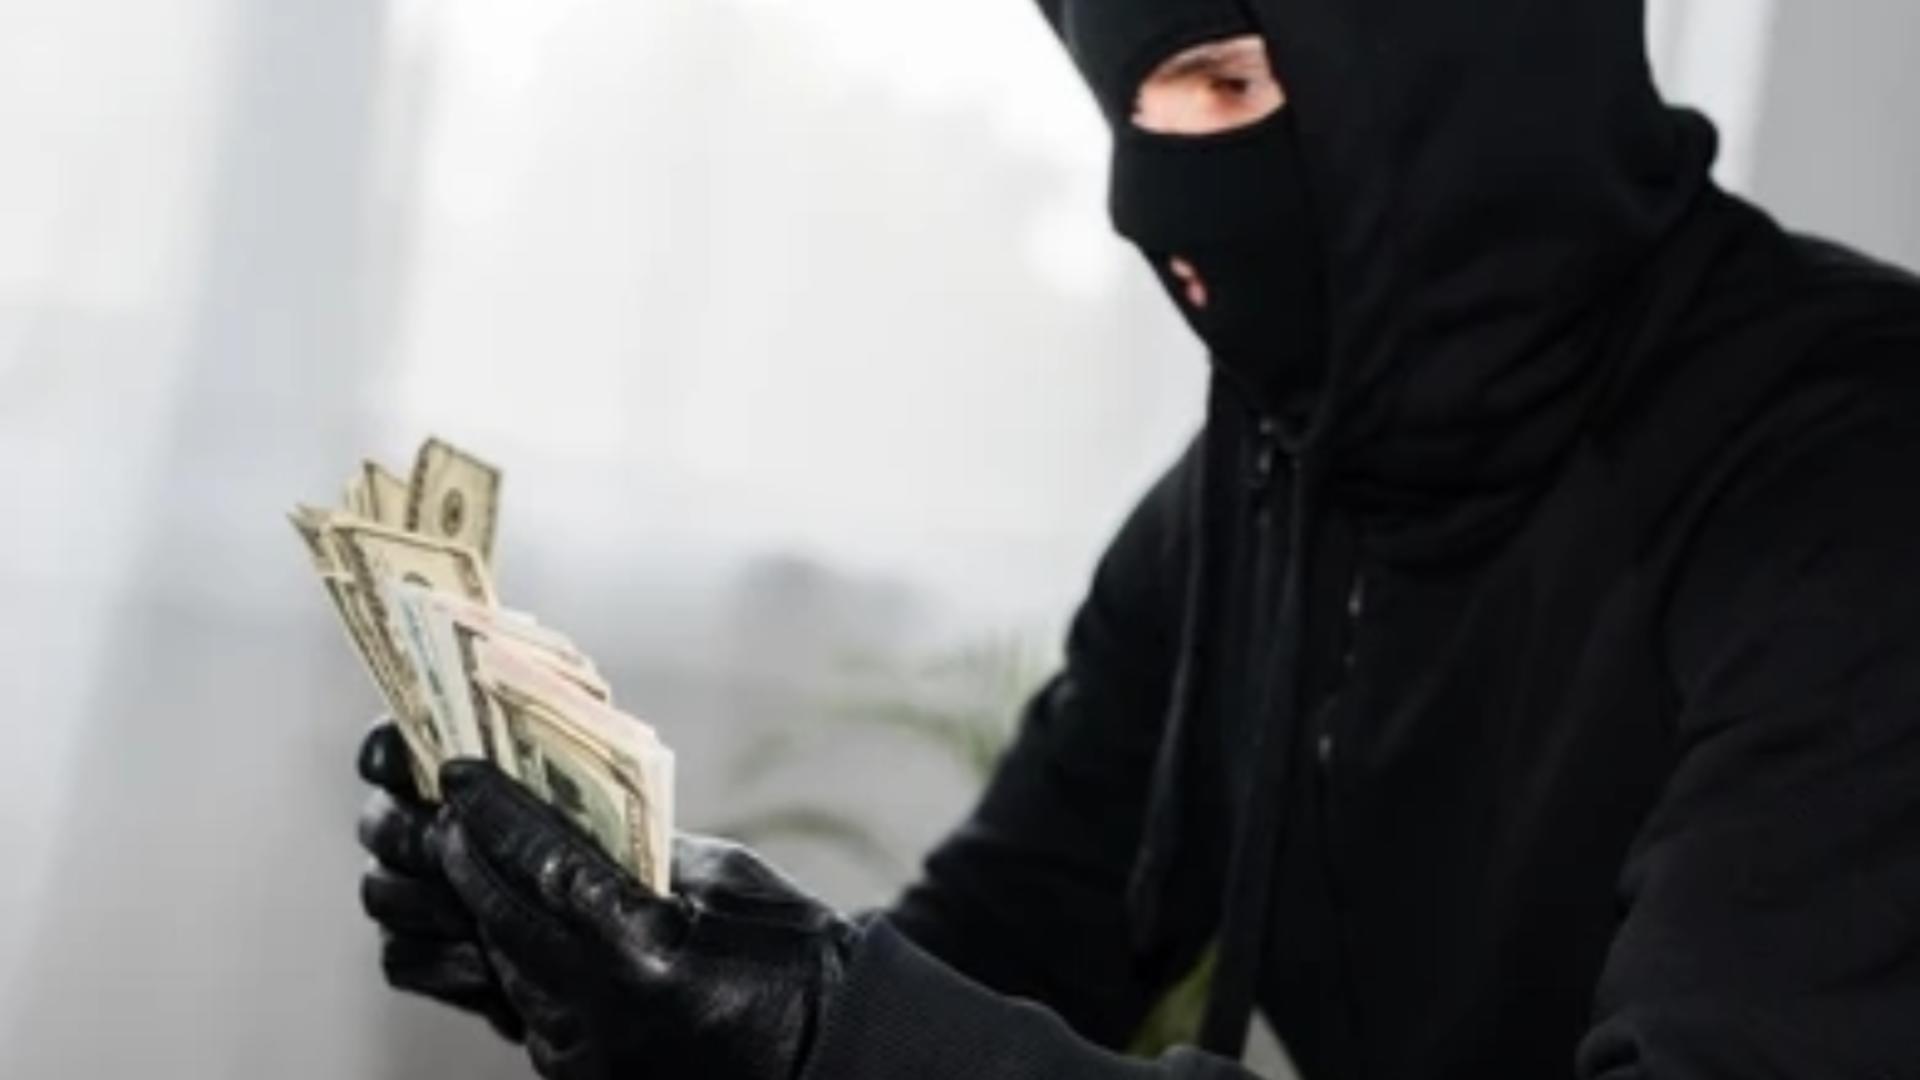 Doi funcționari bancari au furat aproape 140.000 de euro din contul unei persoane